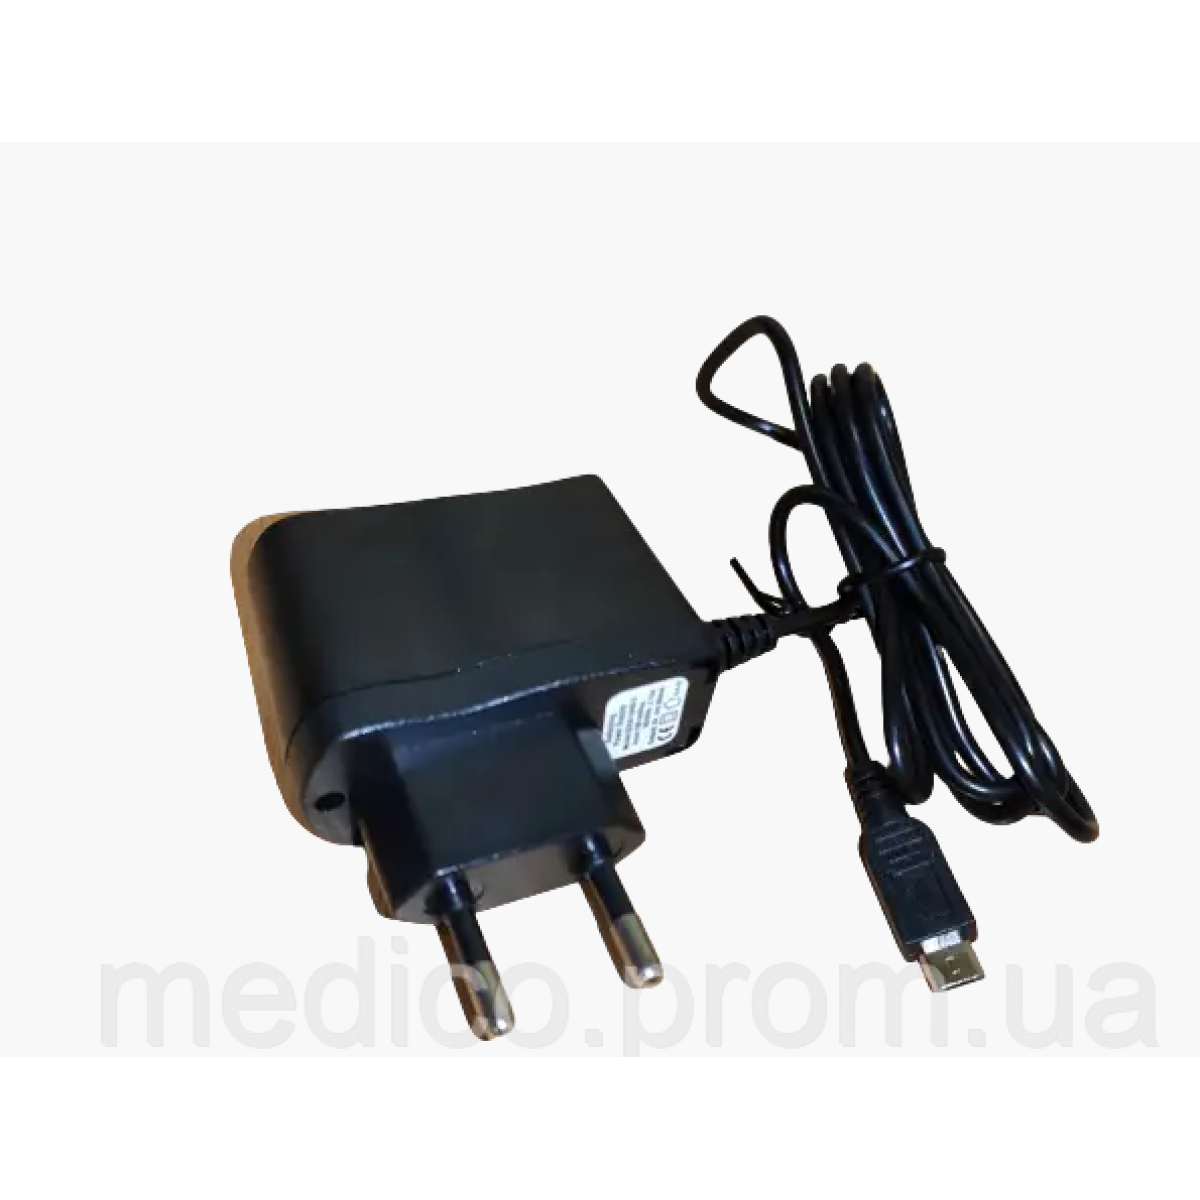 Адаптер для тонометров Paramed-X mirco usb 6В - блок питания, сетевой адаптер